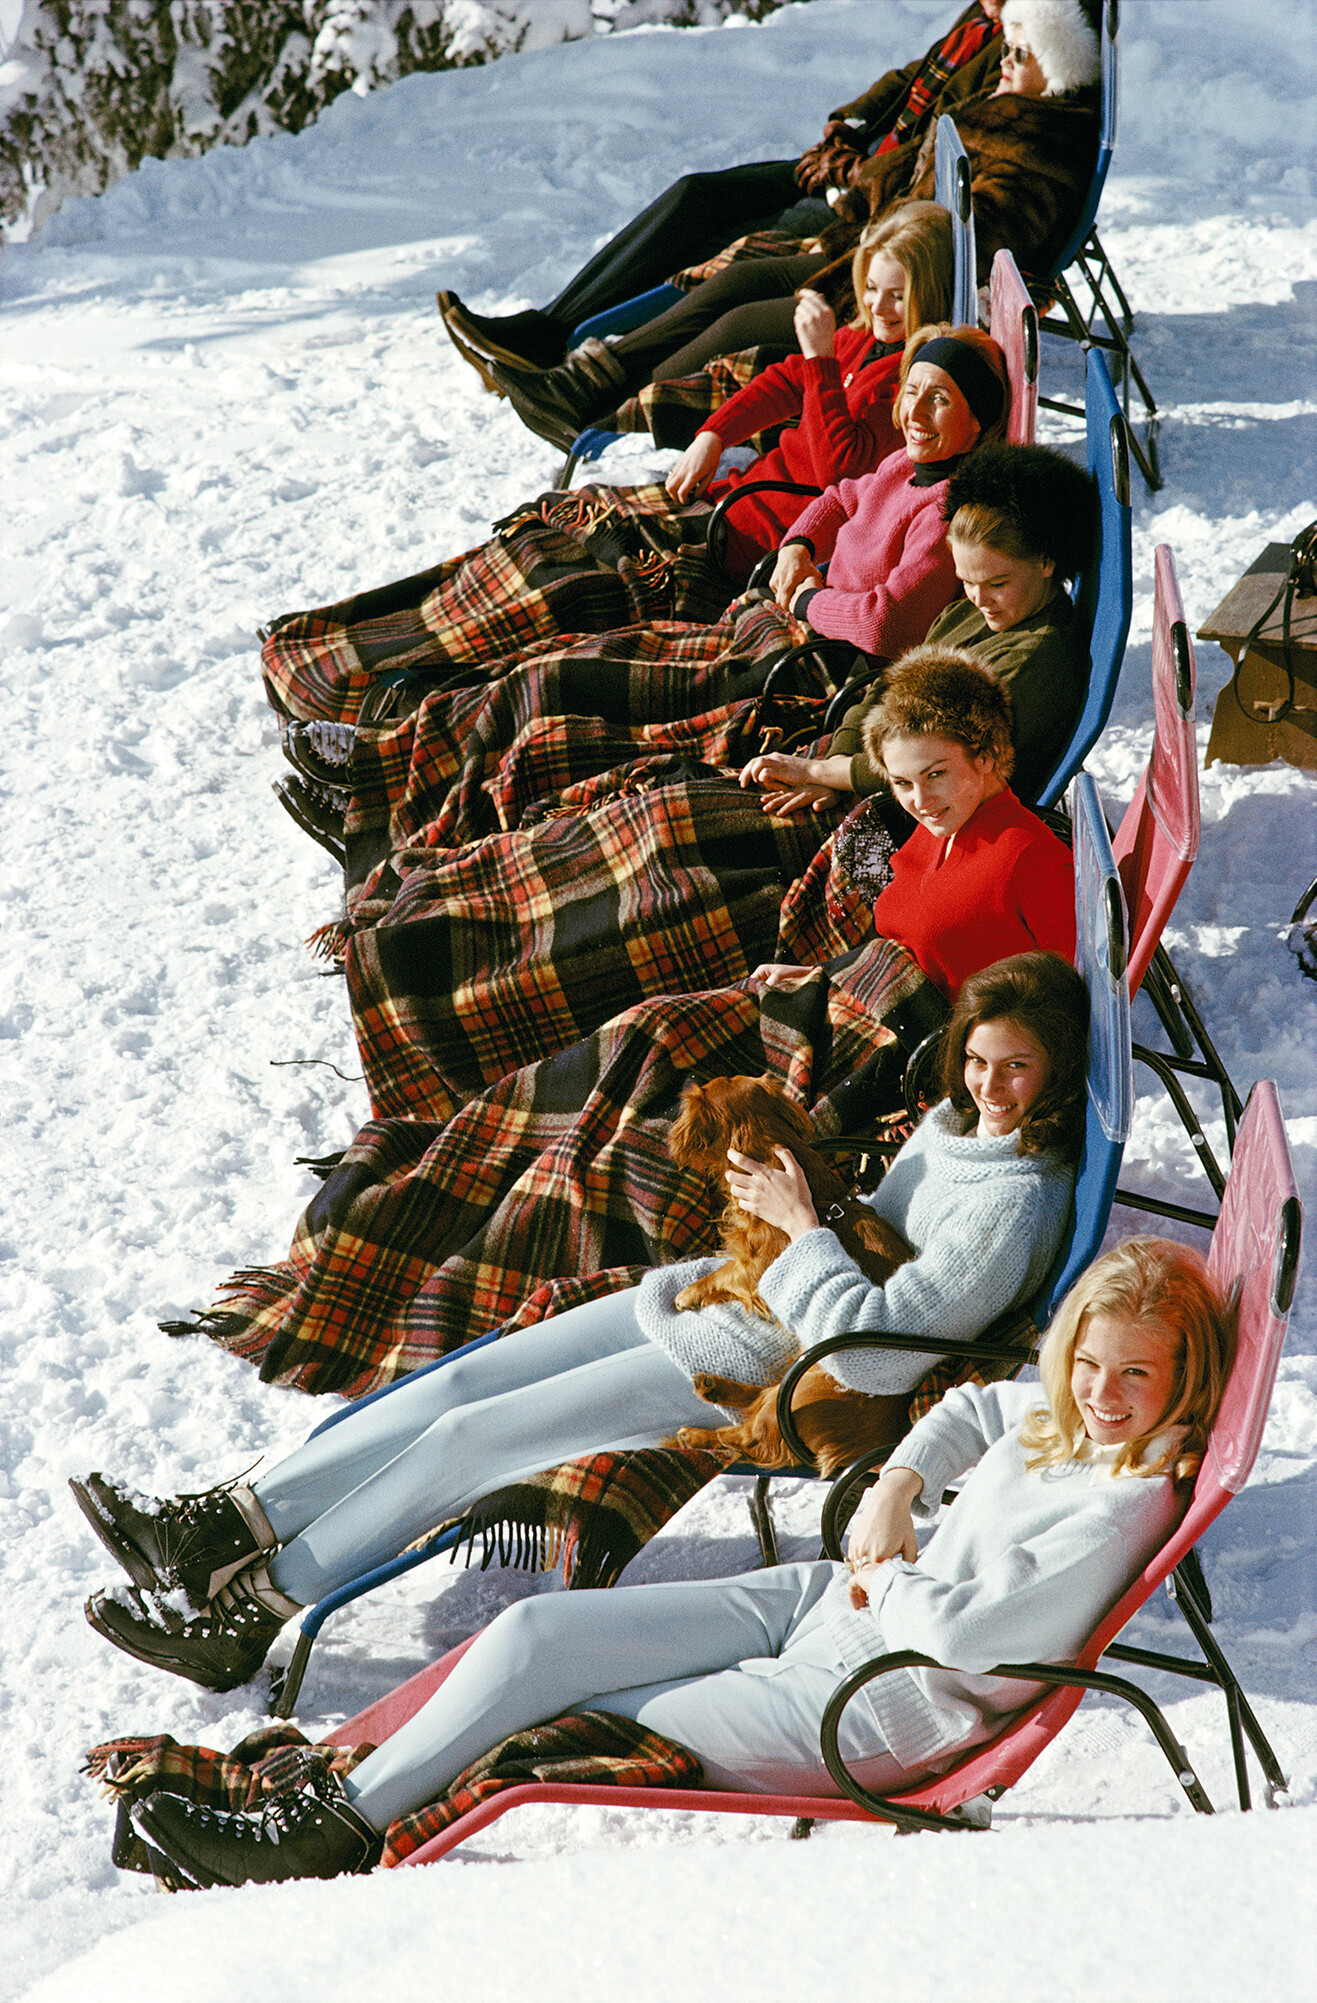 Апре-ски, 1963 год. Фотограф Слим Ааронс